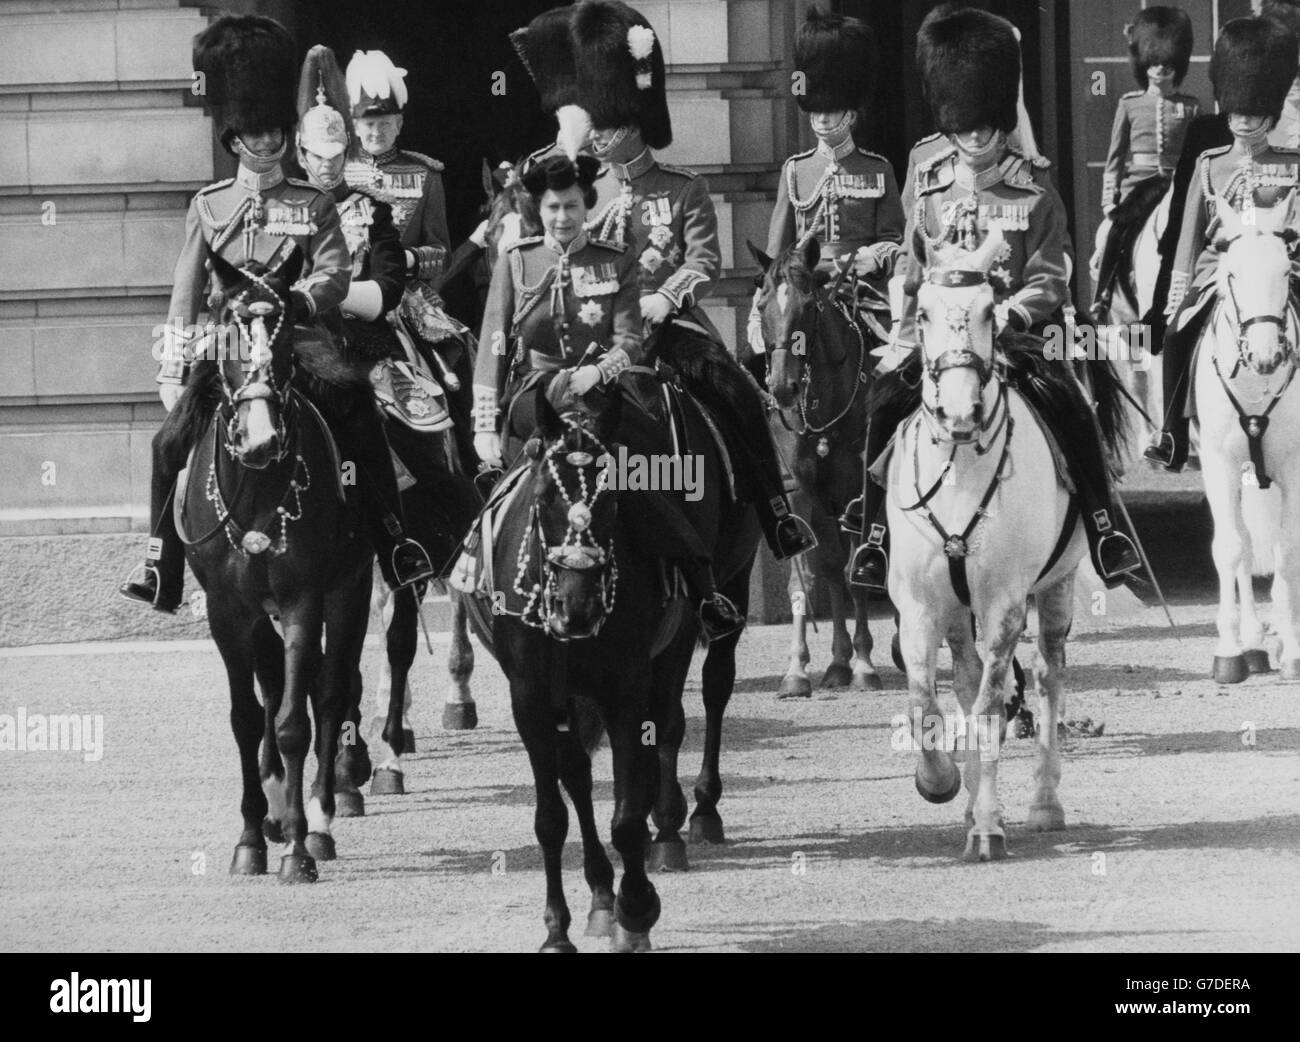 La reine Elizabeth II, portant l'uniforme des gardes Grenadier, quitte le palais de Buckingham pour prendre le salut à la cérémonie du Trooping de la couleur sur la parade des gardes à cheval. Elle est accompagnée du duc d'Édimbourg, du prince Charles et du duc de Kent. Banque D'Images